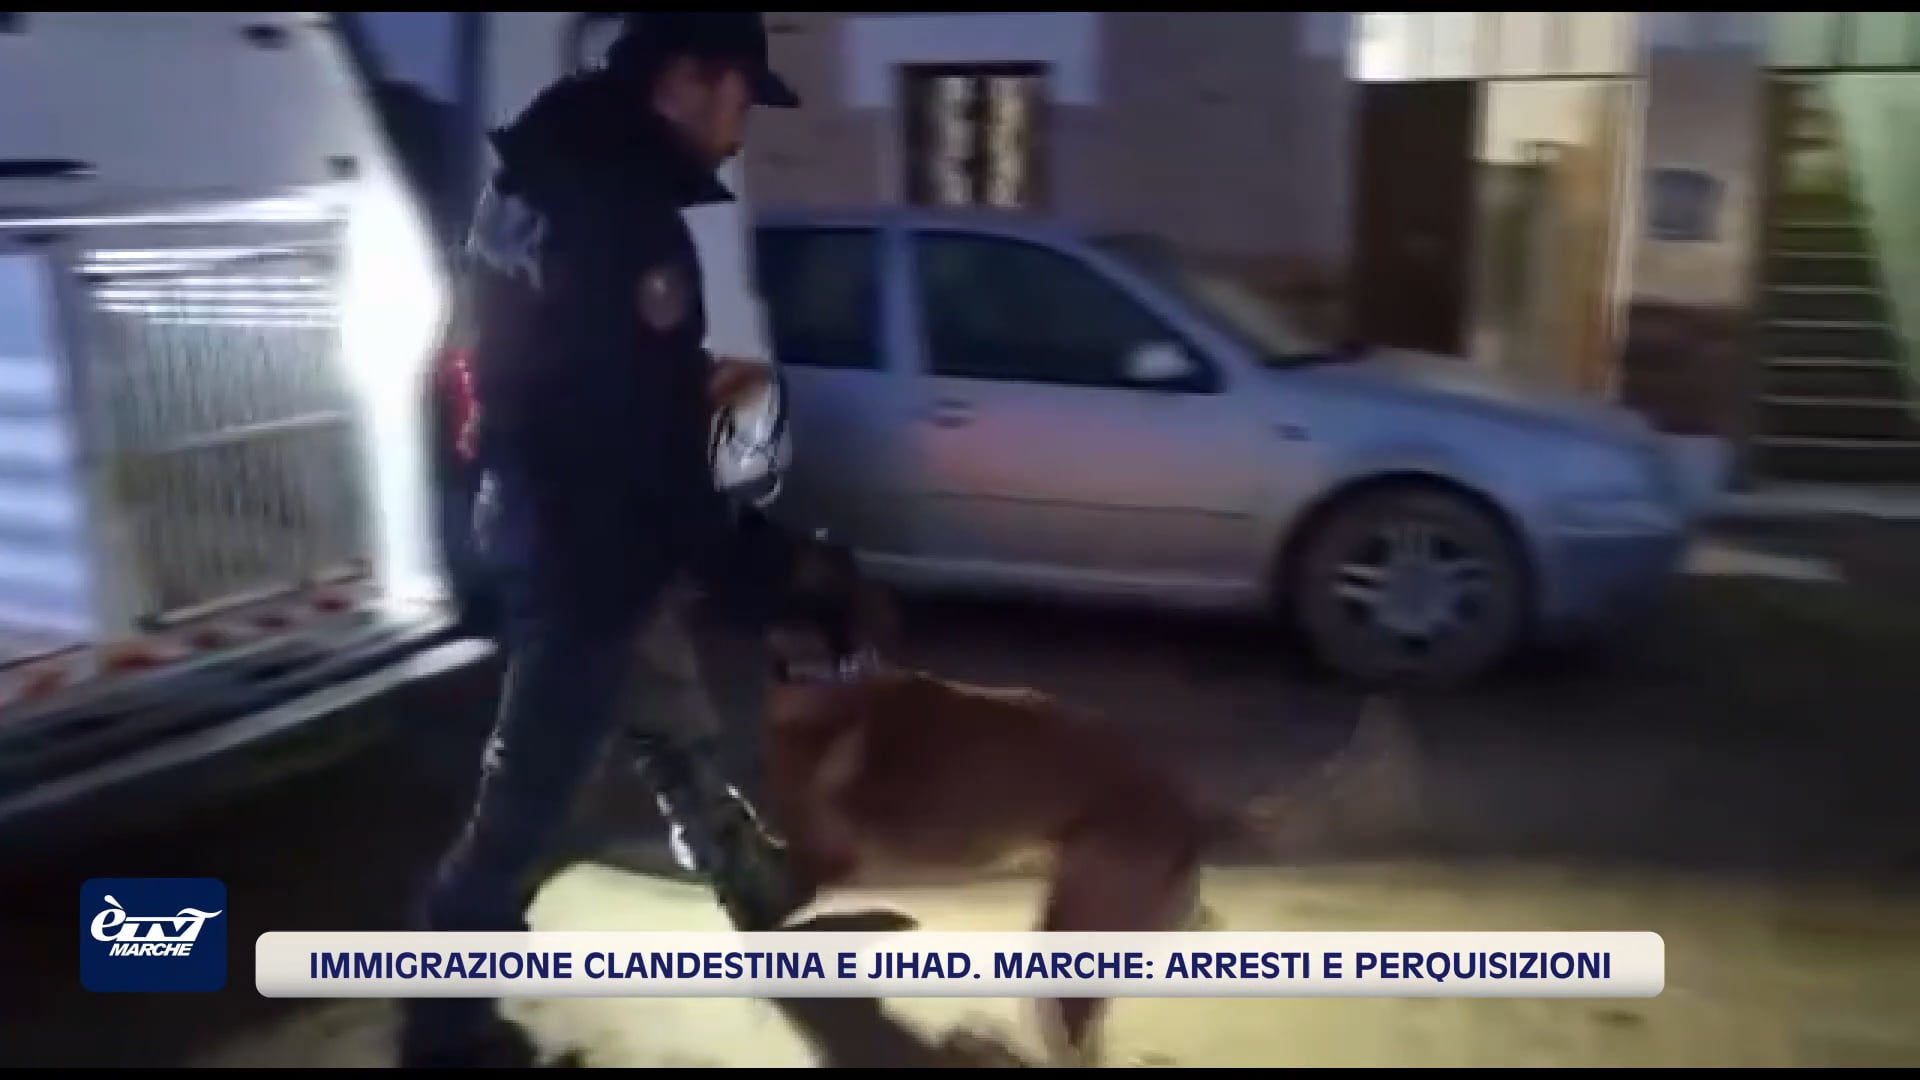 Immigrazione clandestina e jihad. Arresti e perquisizioni nelle Marche - VIDEO